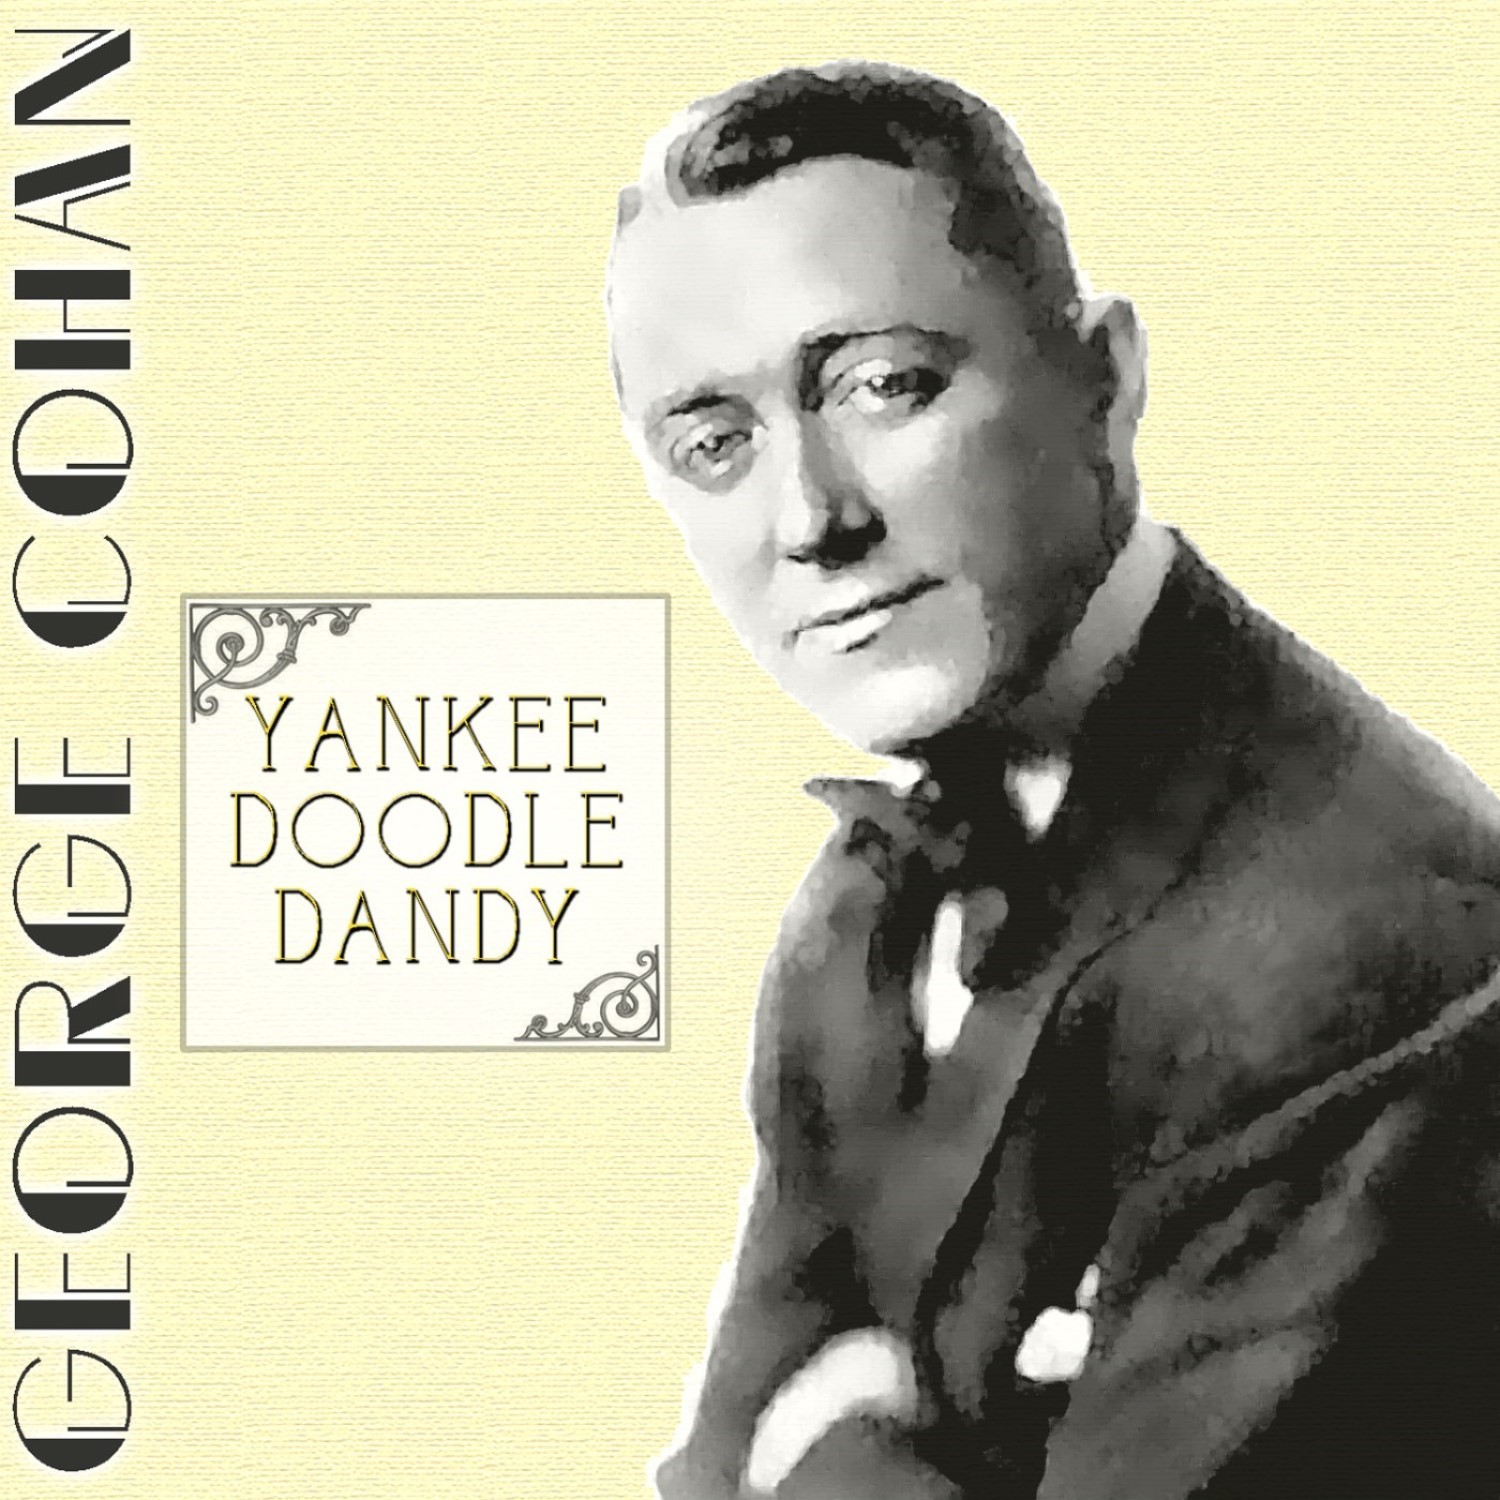 Barney yankee doodle dandy